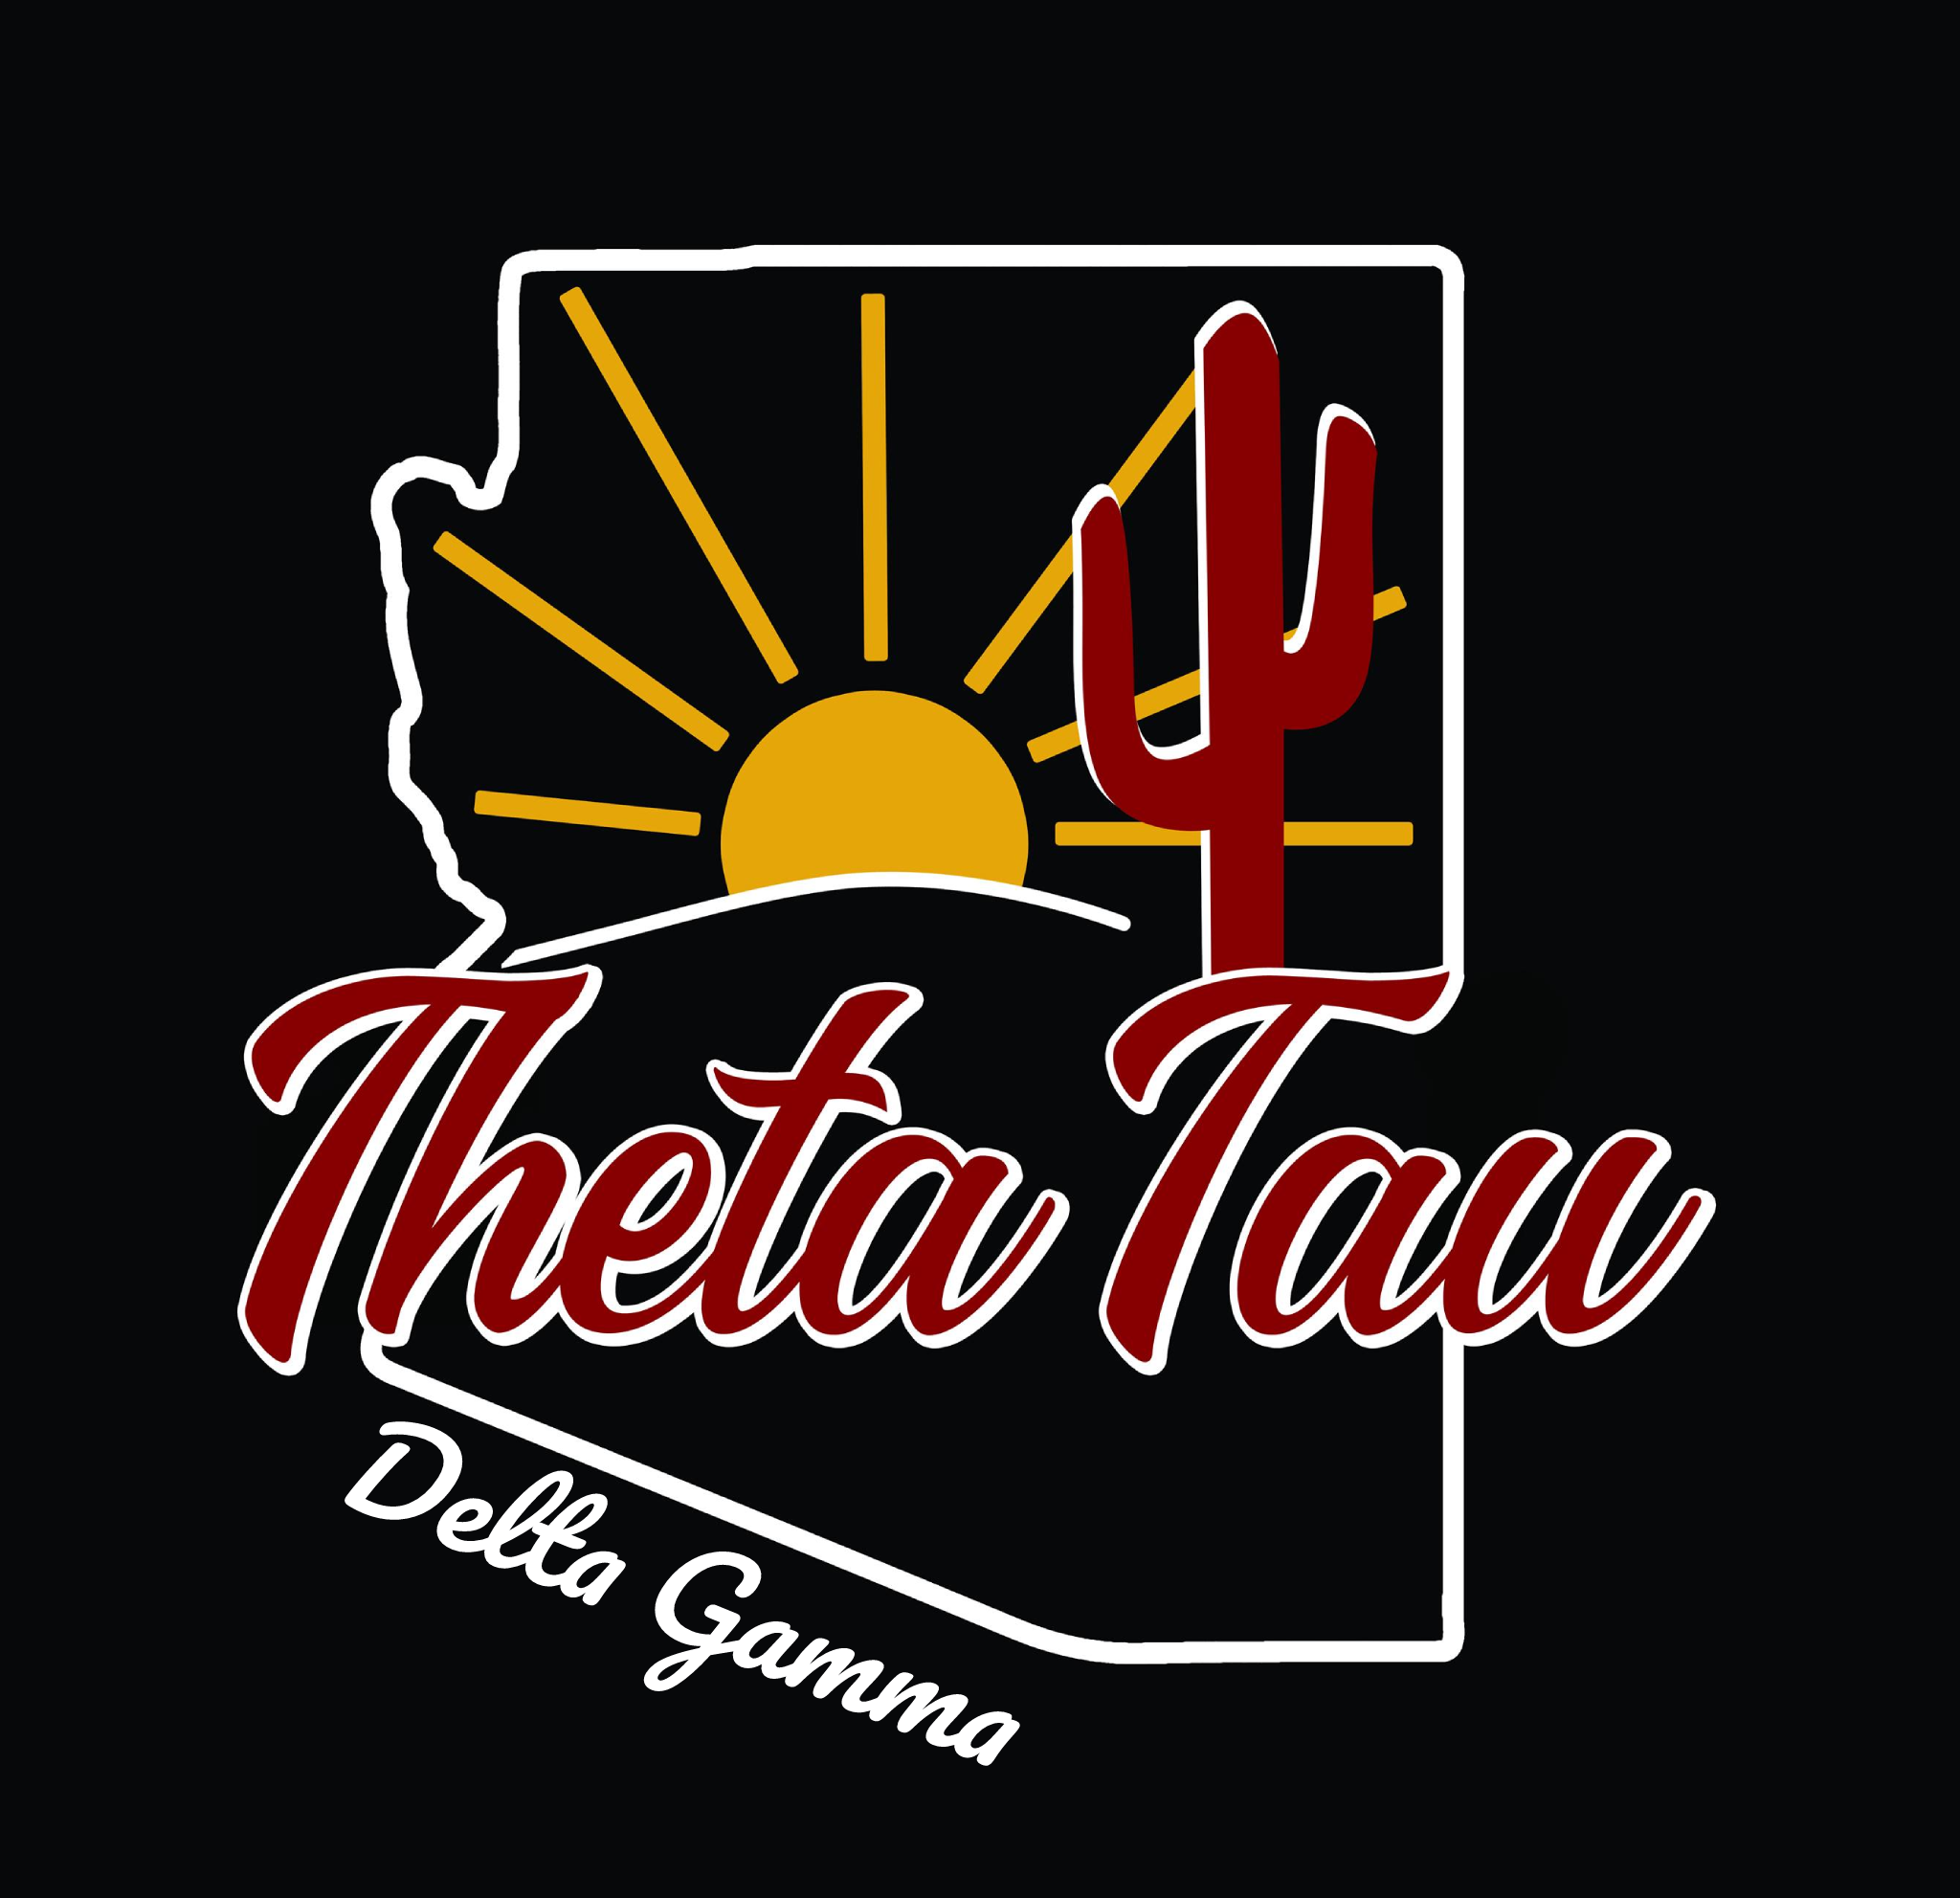 Theta Tau (ΘT) logo